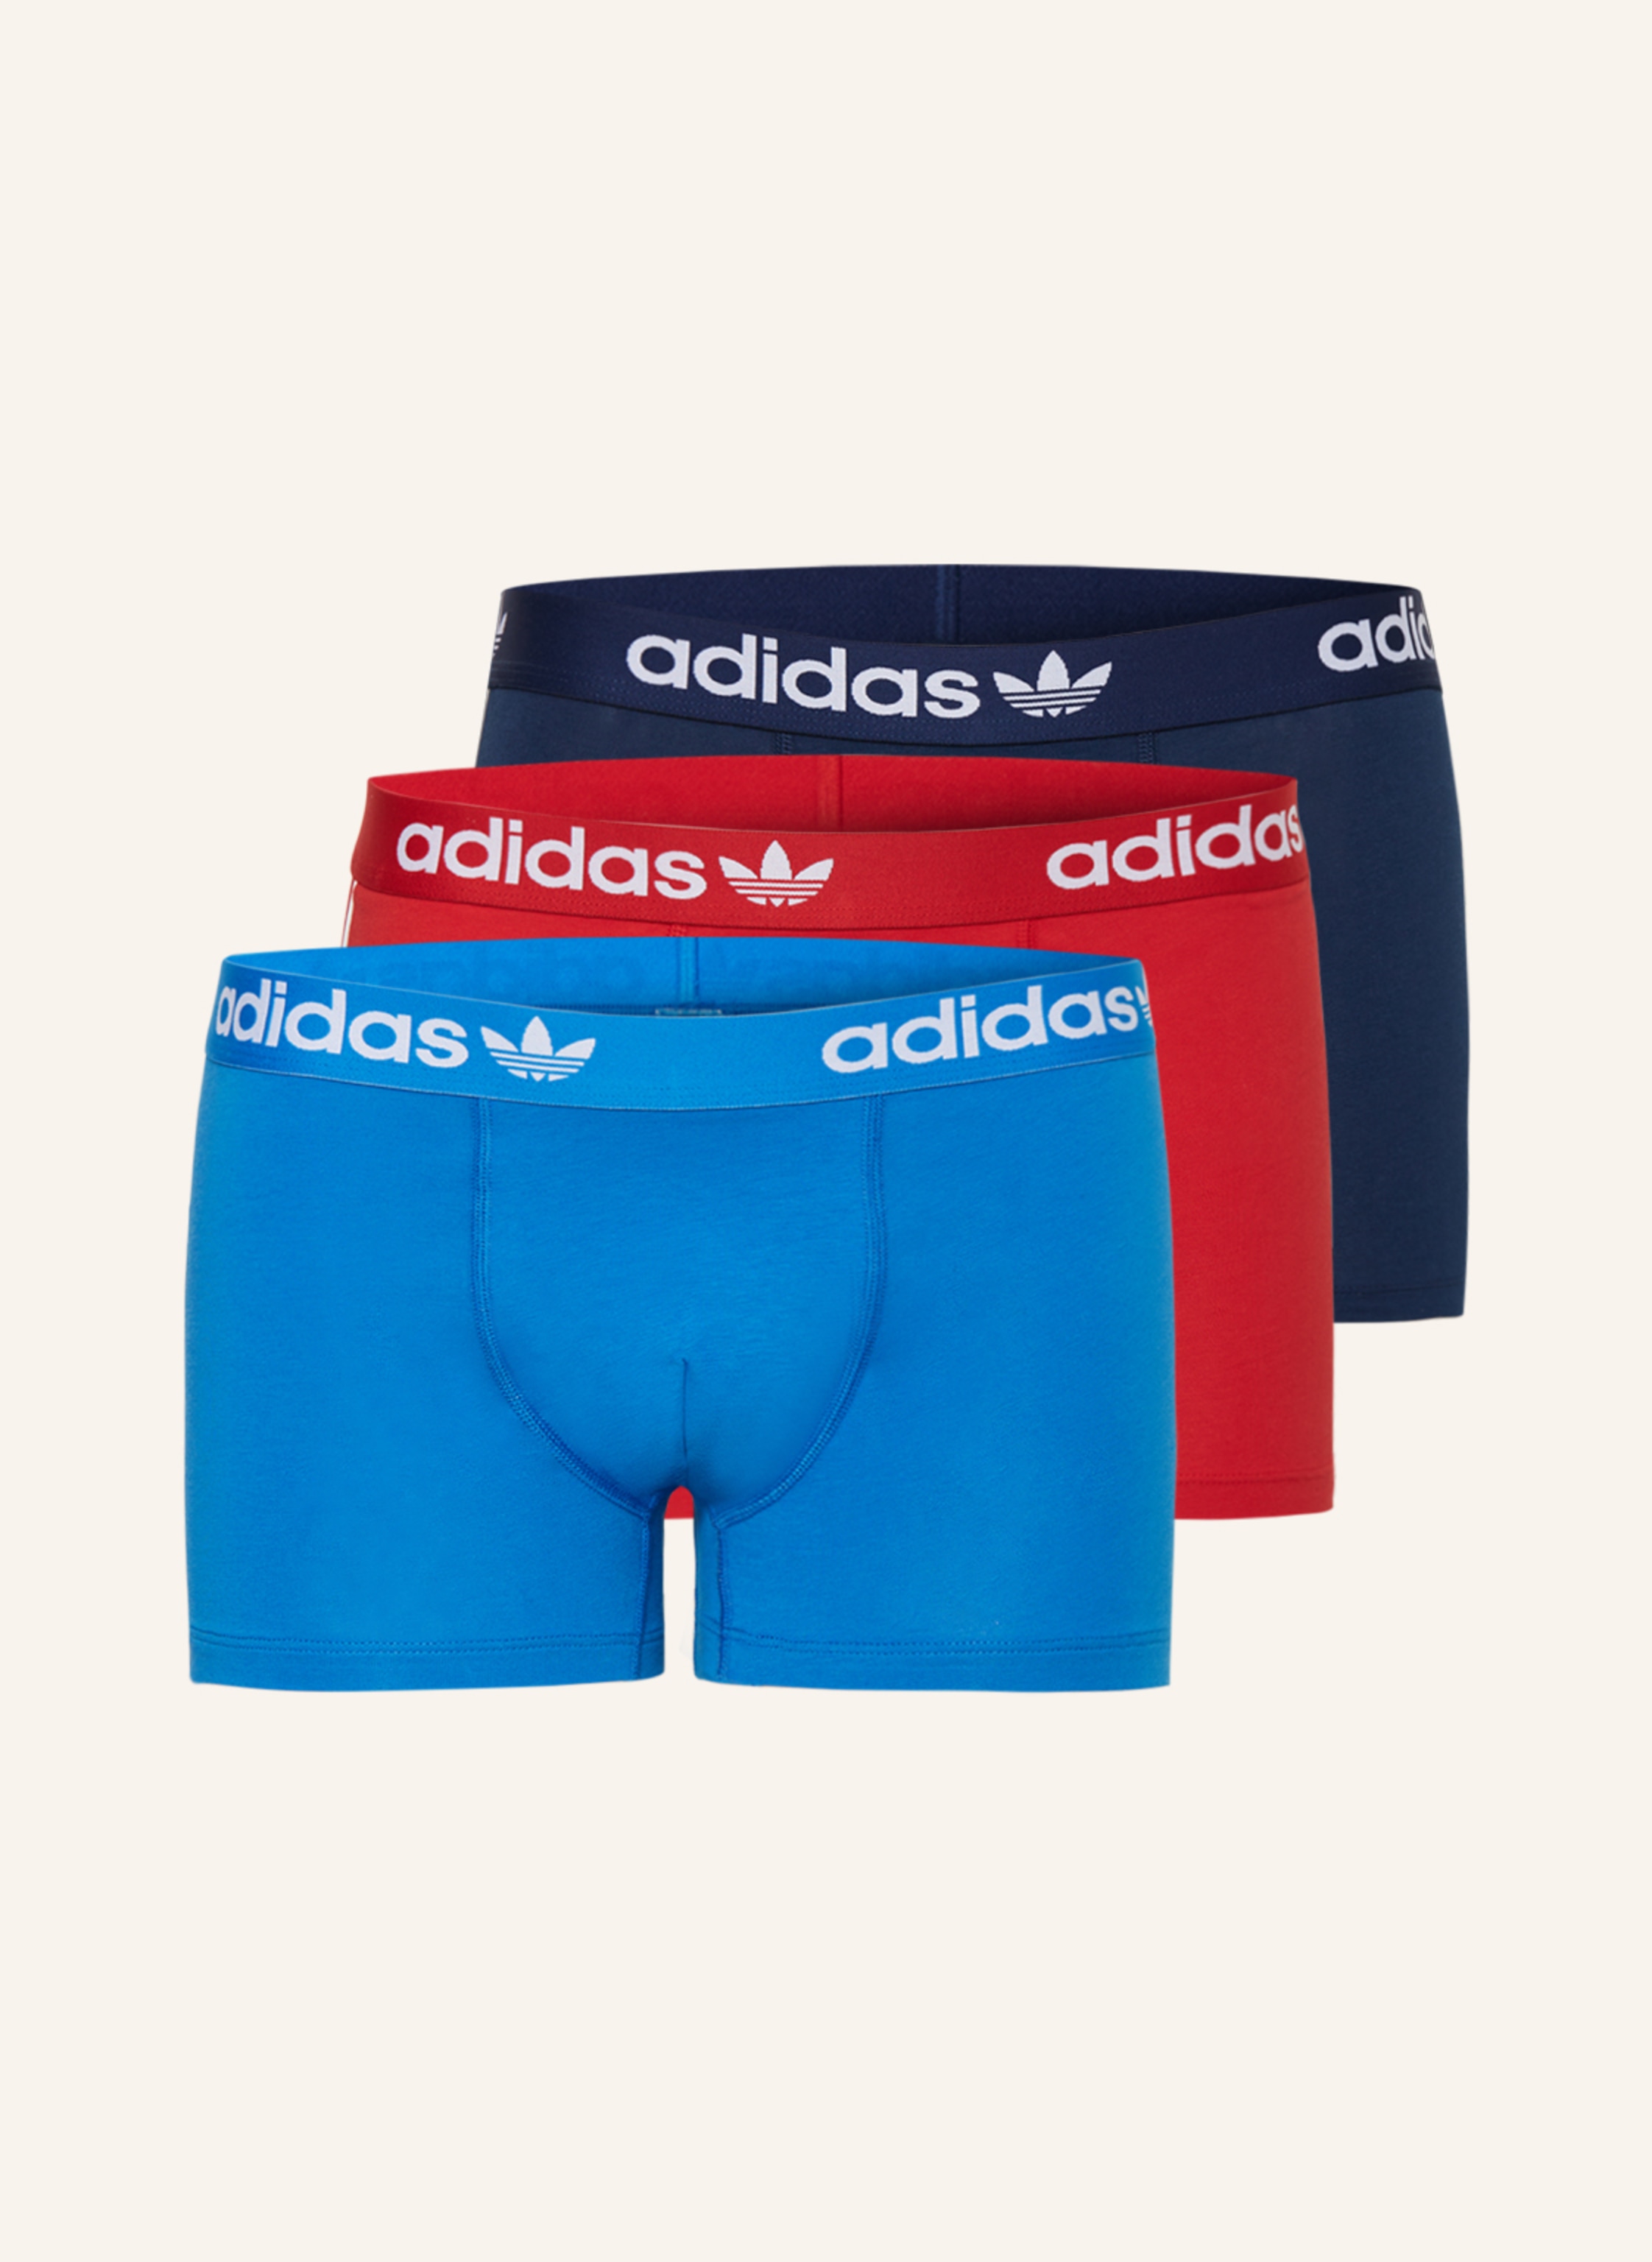 FLEX blau/ rot in dunkelblau/ 3-STRIPES COTTON Originals Boxershorts adidas 3er-Pack COMFORT